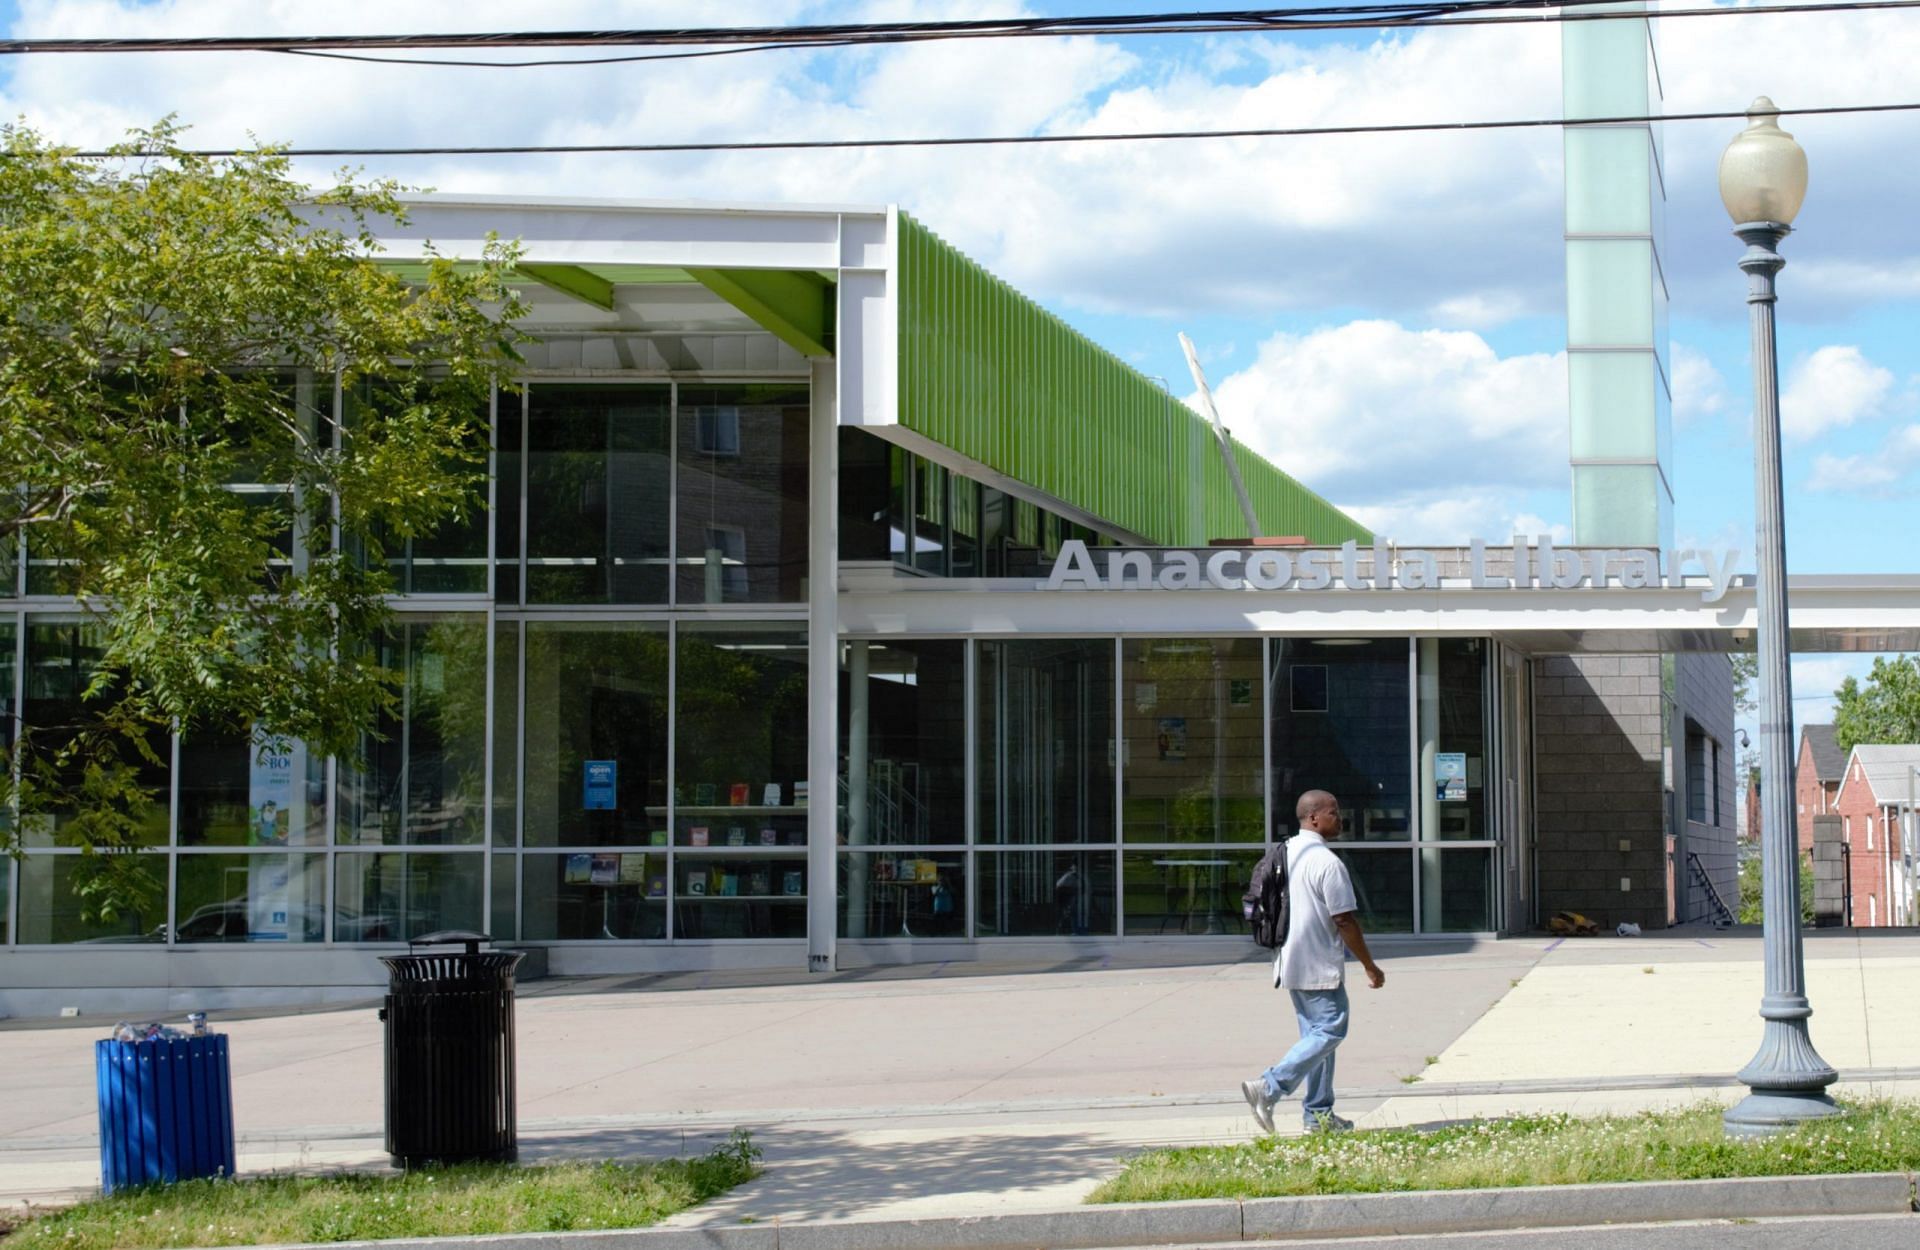 Anacostia Neighborhood Library (Image via Getty)